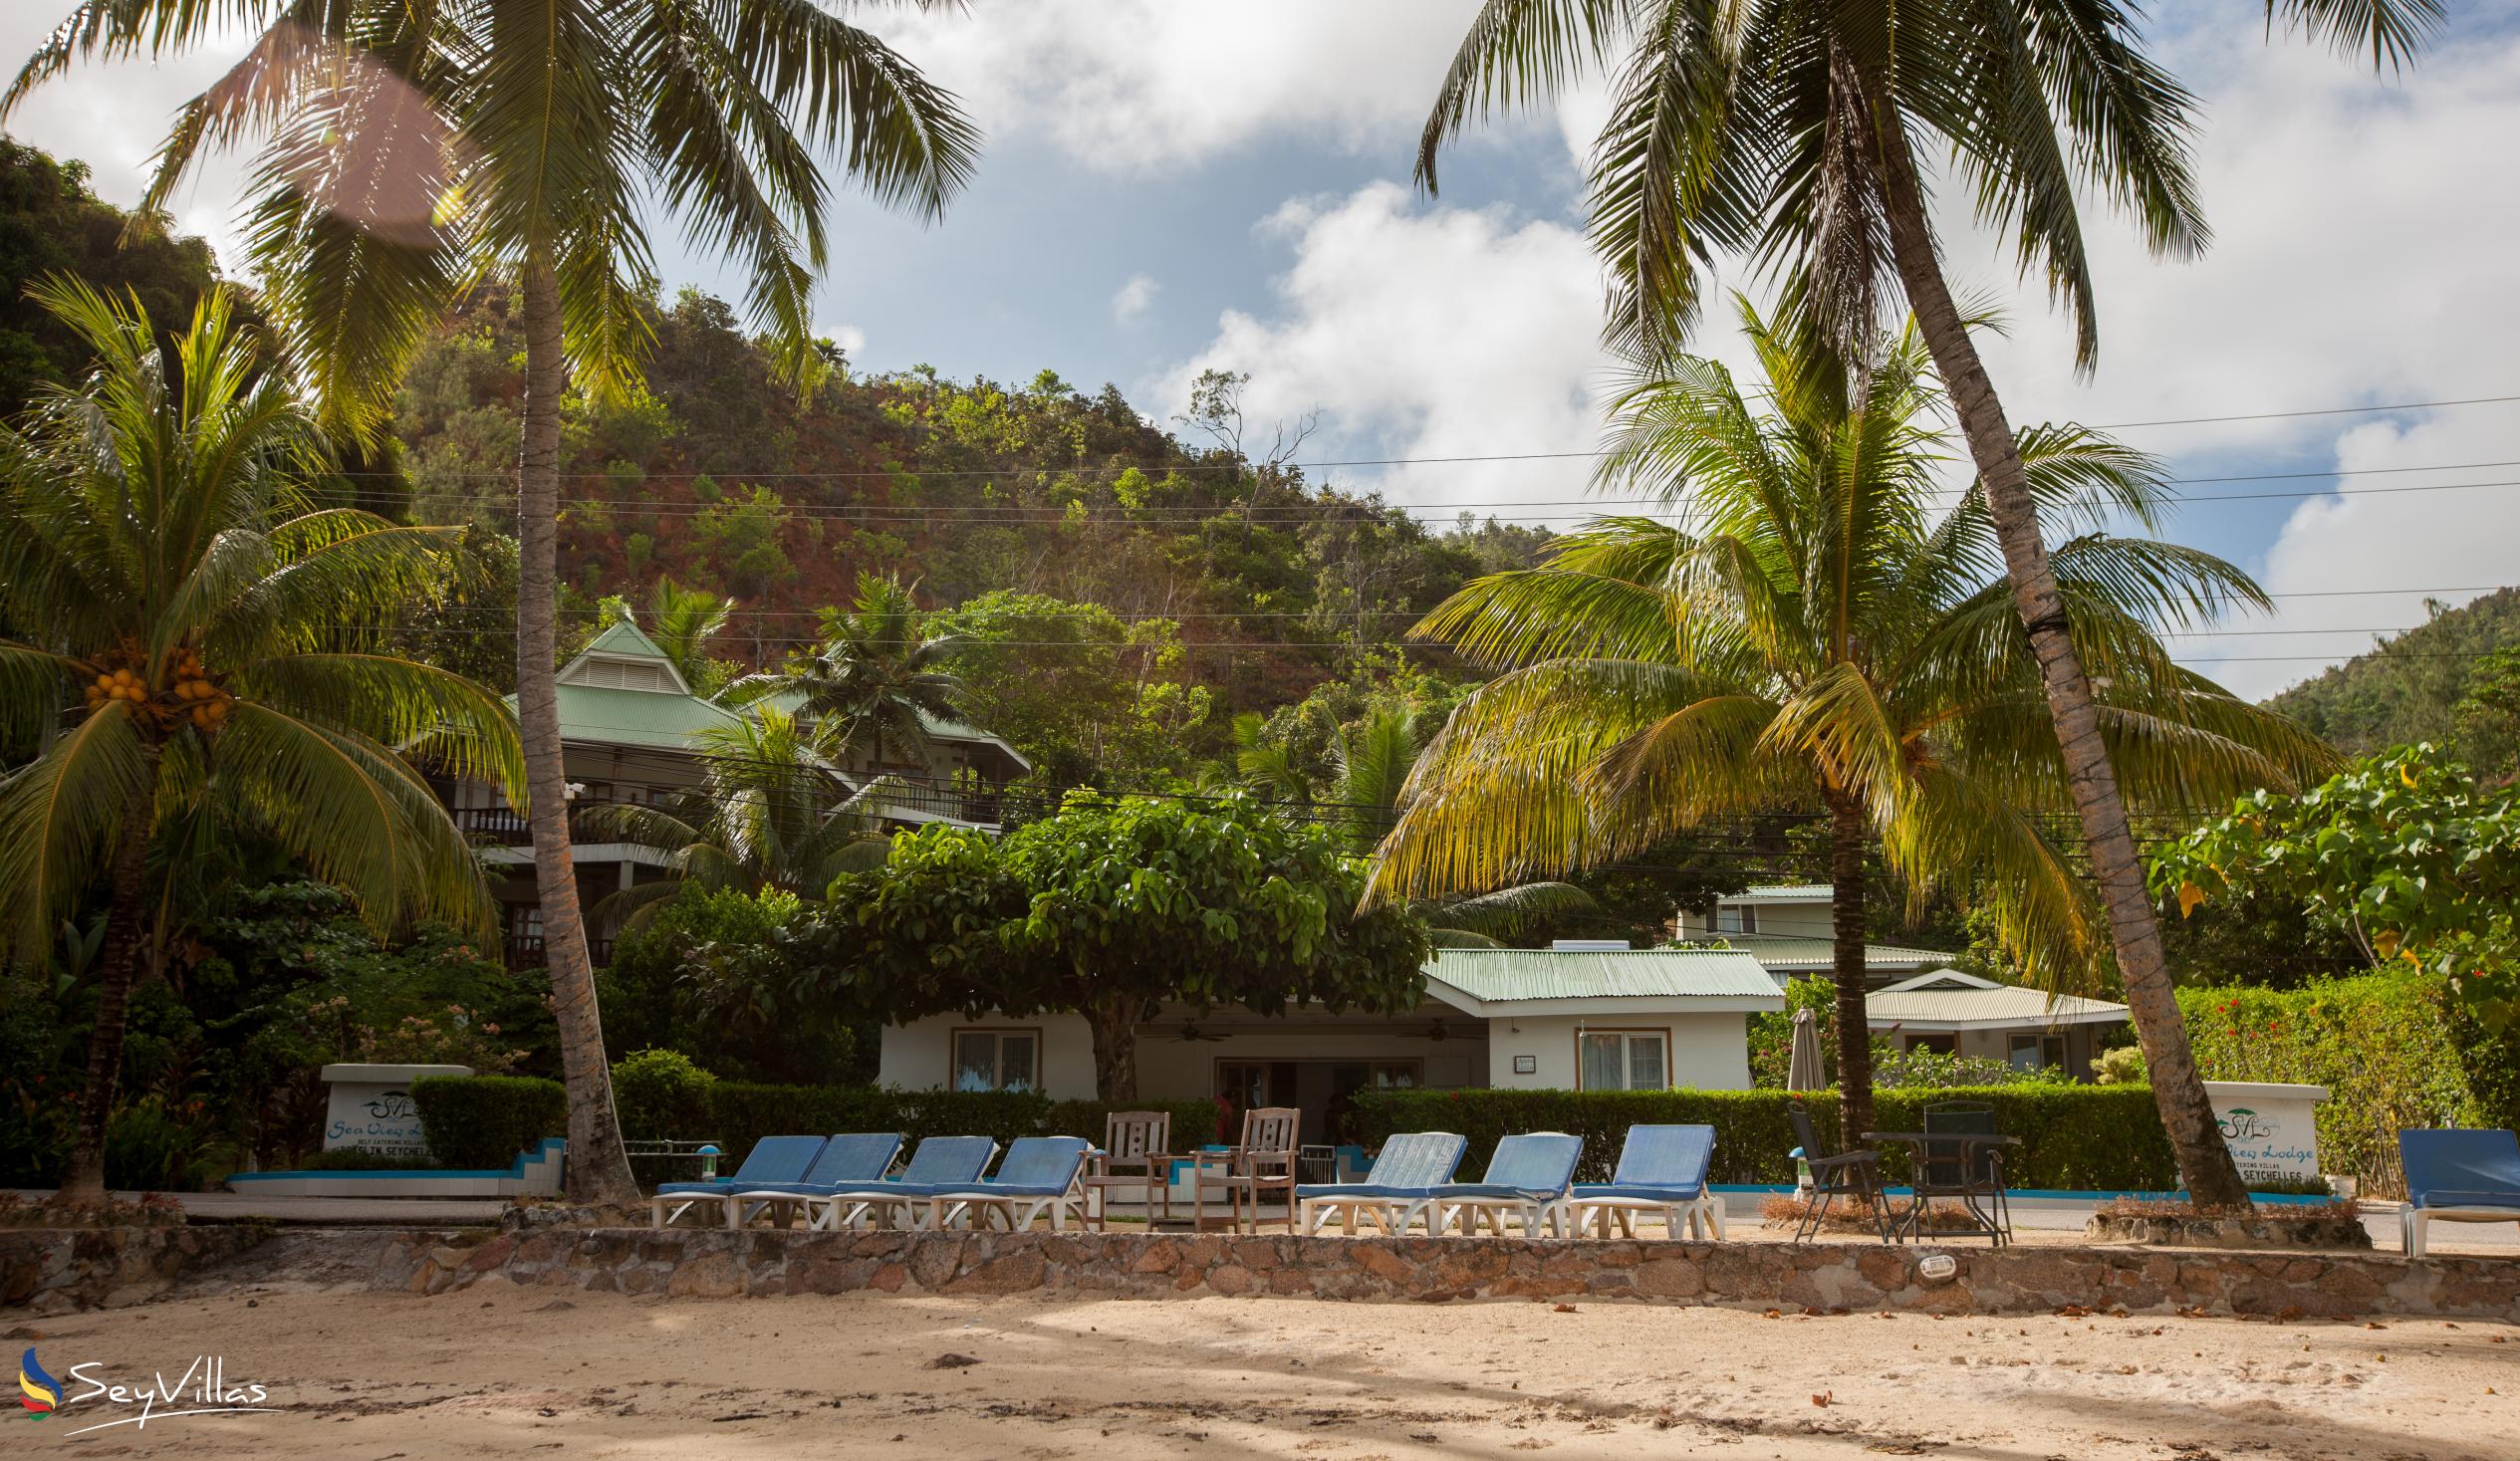 Foto 8: Sea View Lodge - Aussenbereich - Praslin (Seychellen)